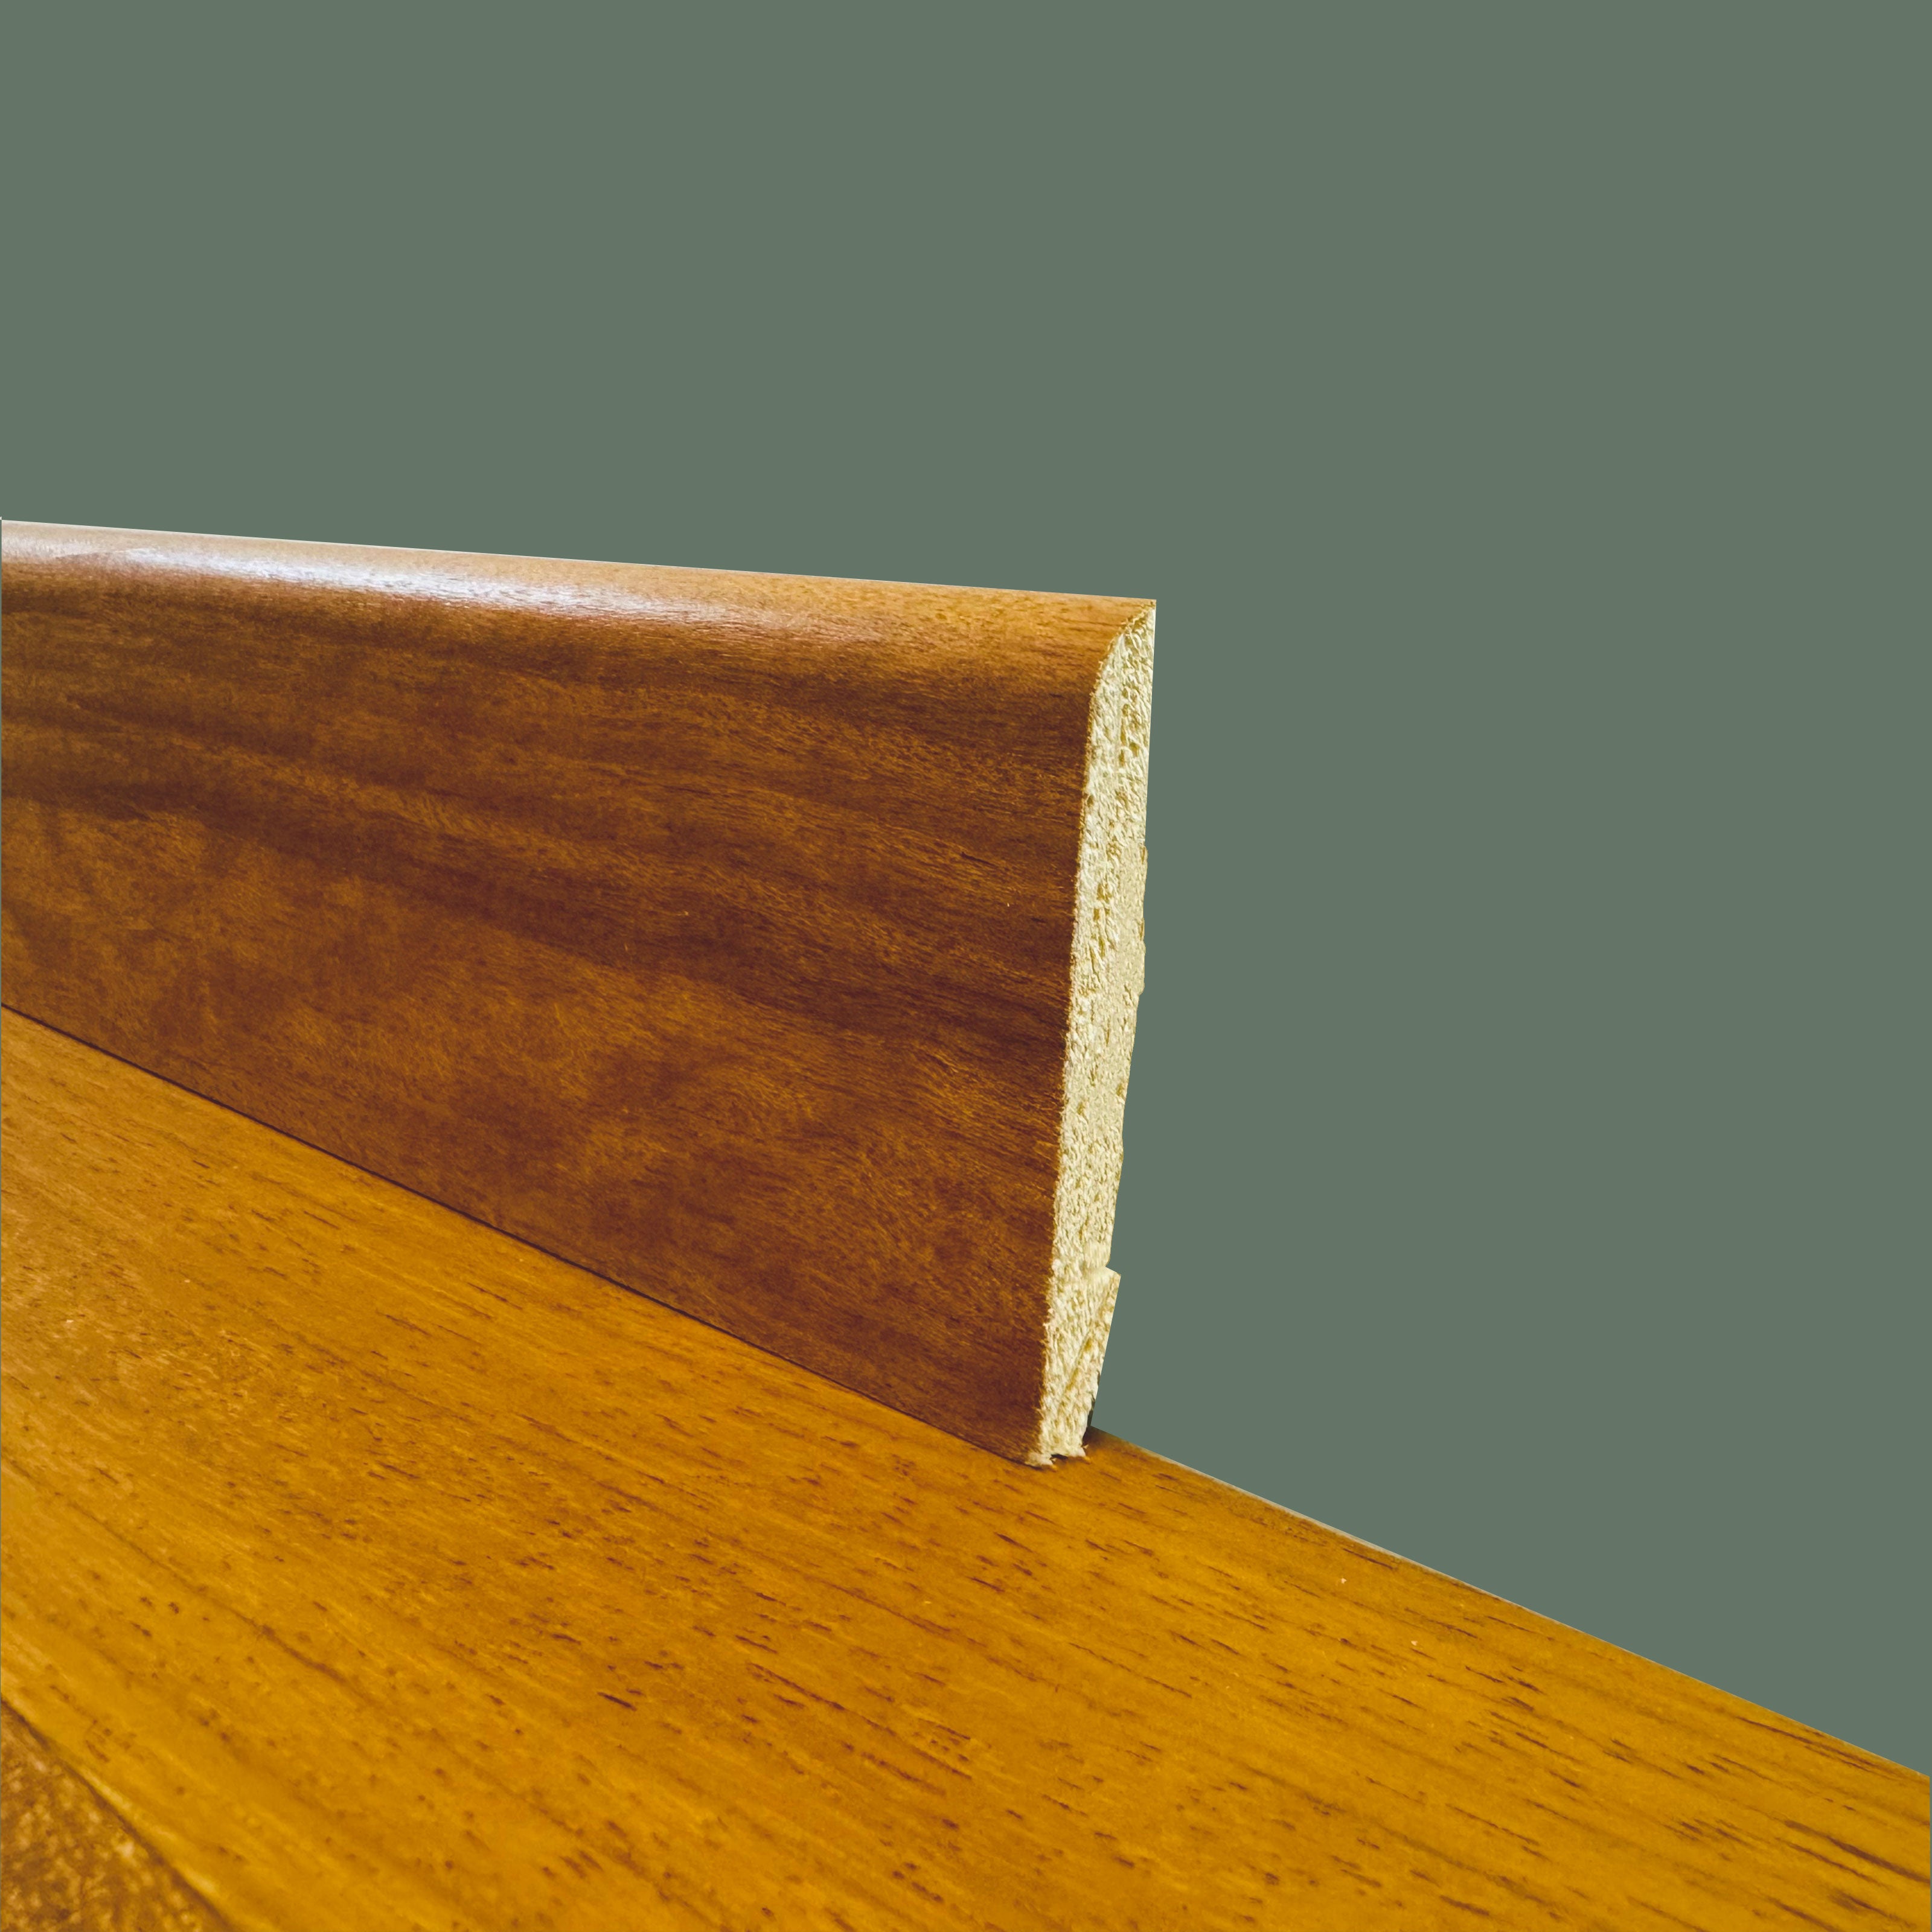 BATTISCOPA BC in legno MASSELLO impiallacciato VERO LEGNO DI DOUSSIE' 70x10 verniciato opaco poro aperto - Eternal Parquet